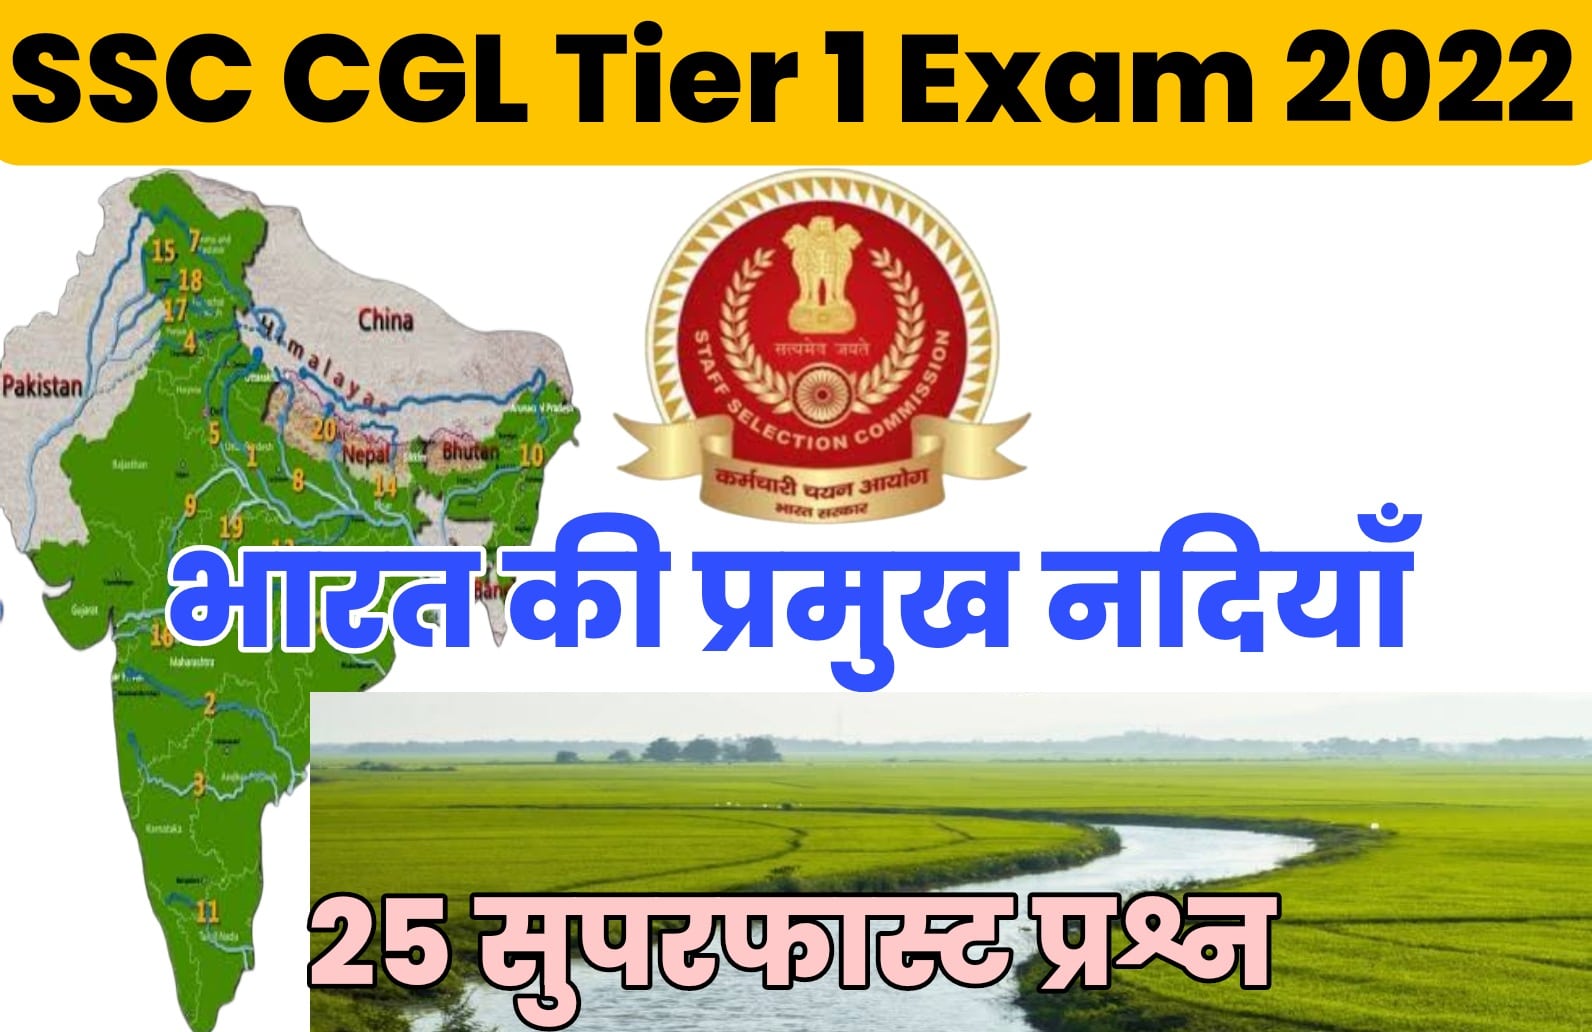 SSC CGL Tier I Exam 2022 | भारत की प्रमुख नदियों पर आधारित प्रश्न जो परीक्षा में बार-बार पूछे जाते हैं, एक नजर अवश्य अध्ययन करें